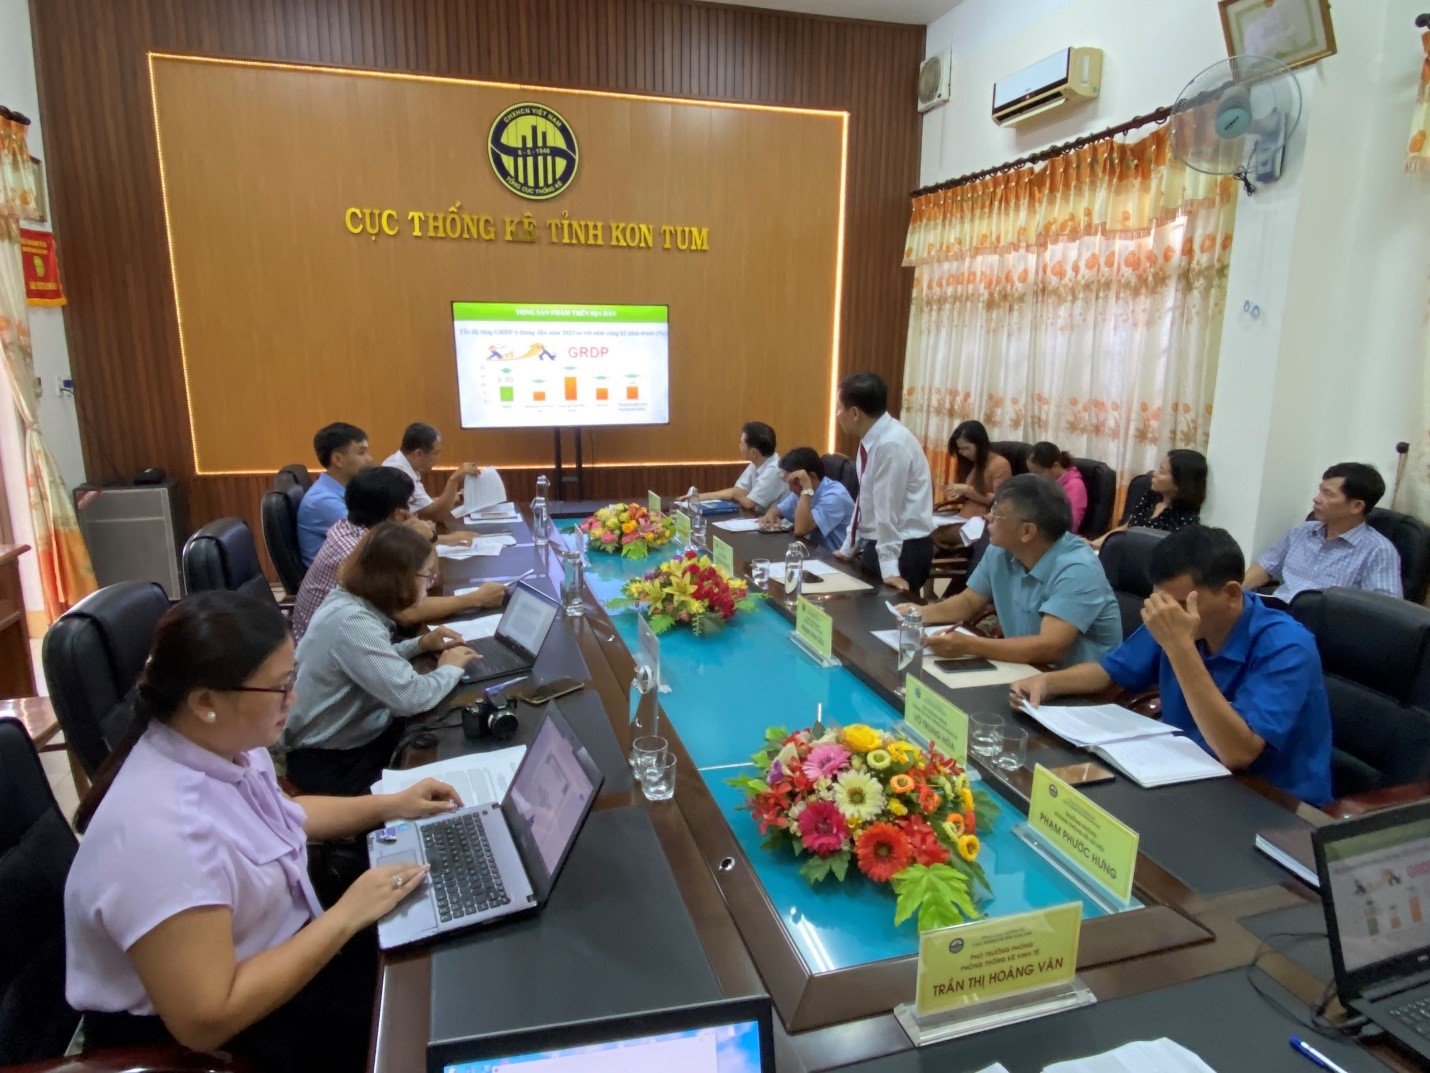 Cục Thống kê tỉnh Kon Tum tổ chức họp báo công bố số liệu thống kê kinh tế - xã hội 6 tháng đầu năm 2023